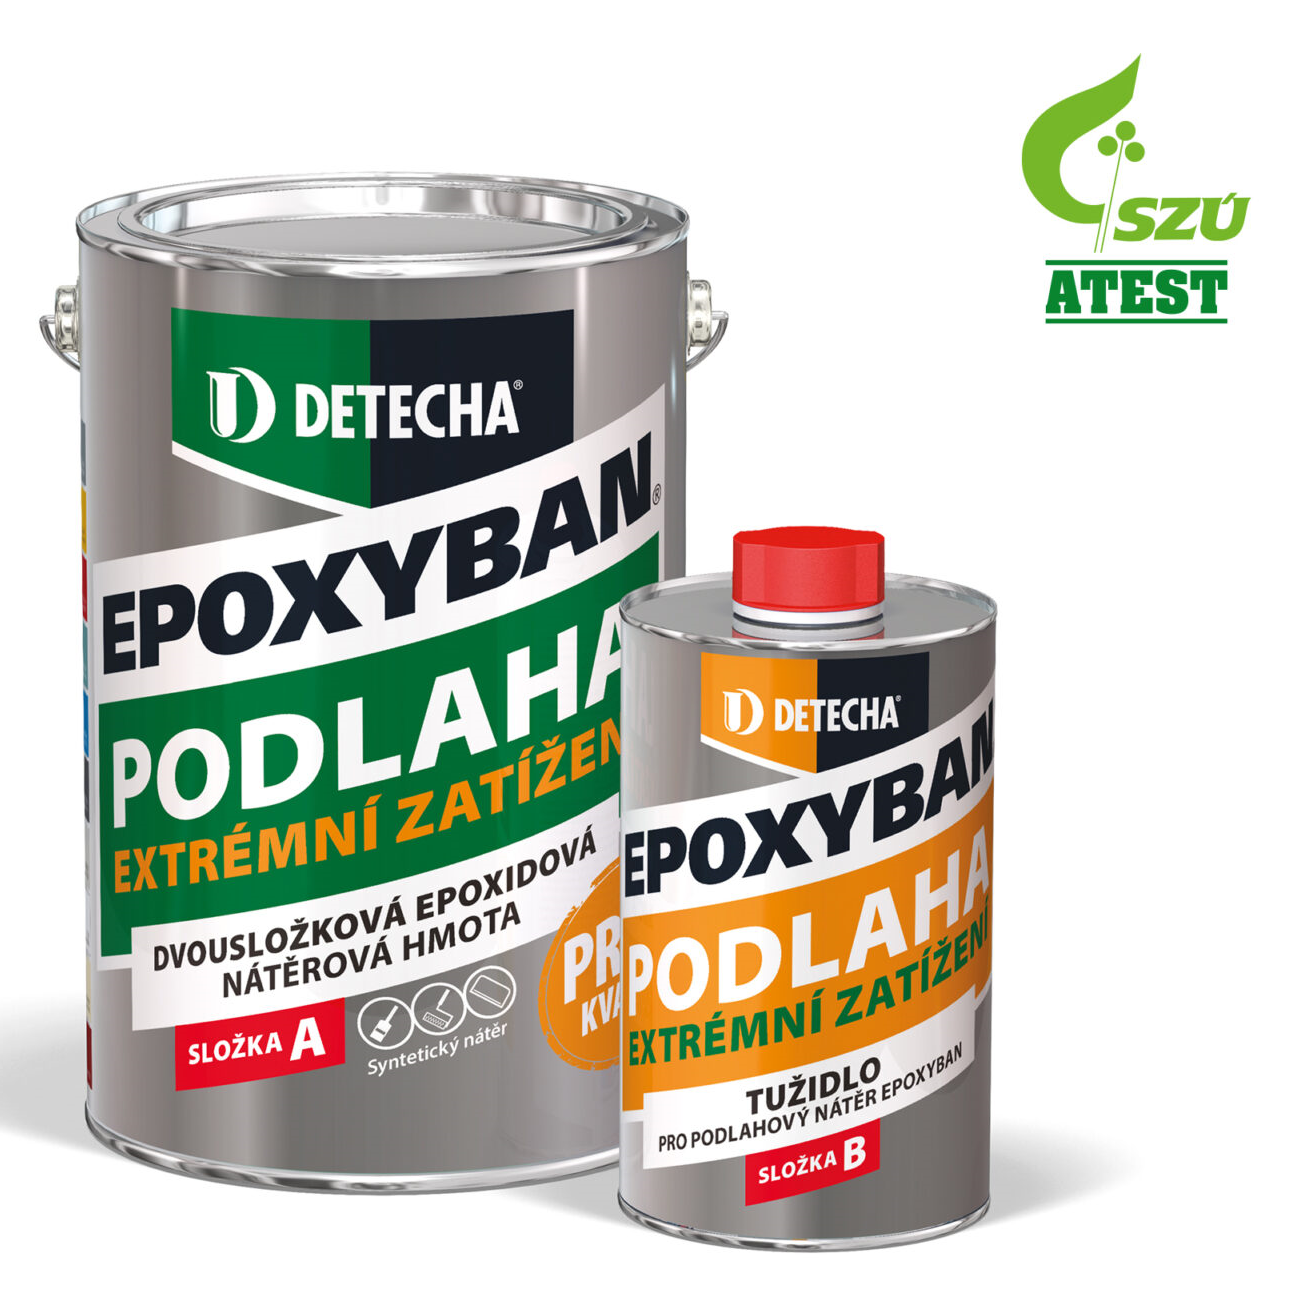 Detecha Epoxyban * Dvousložkové epoxid na betonové podlahy s velmi vysokou zátěží. 1